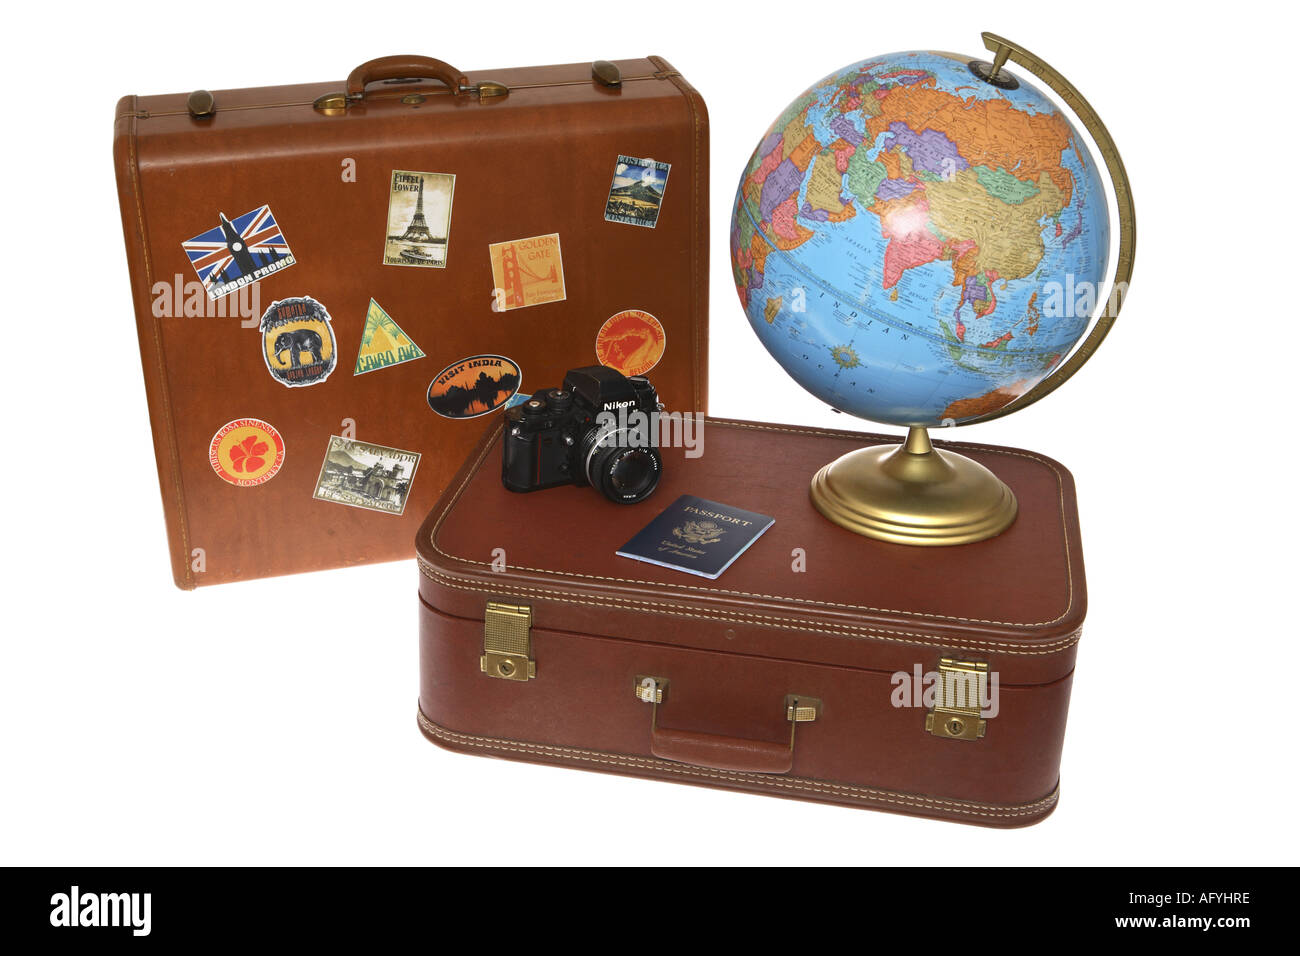 Reisen Sie Artikel; Koffer, Globus Kamera und Reisepass Stockfoto